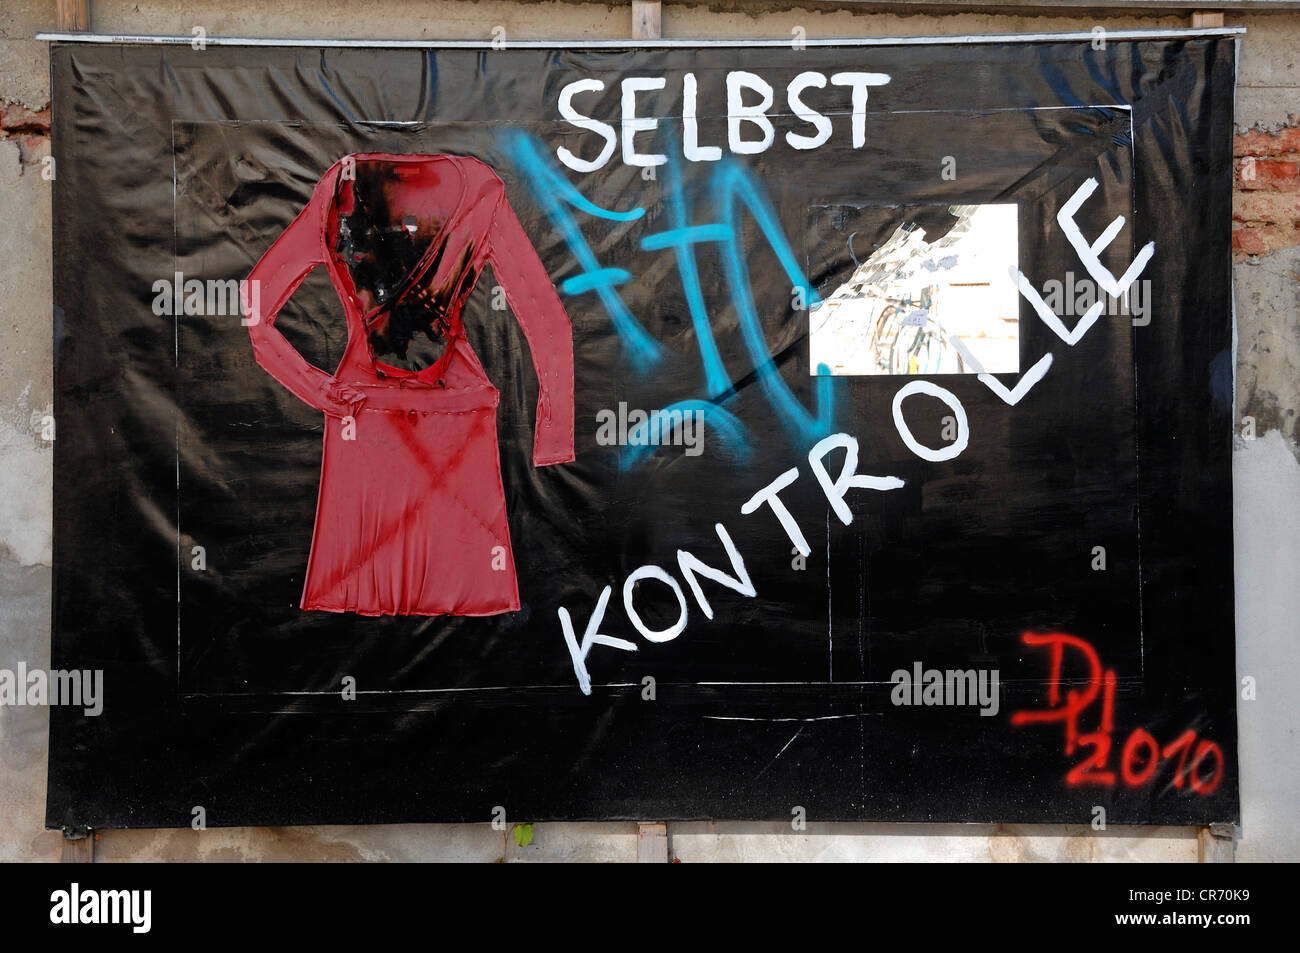 Plakatwand mit Graffiti-Slogan "Ausstrahlung", Deutsch für "Selbstkontrolle", Argentinierstraße, Wien, Austria, Europe Stockfoto